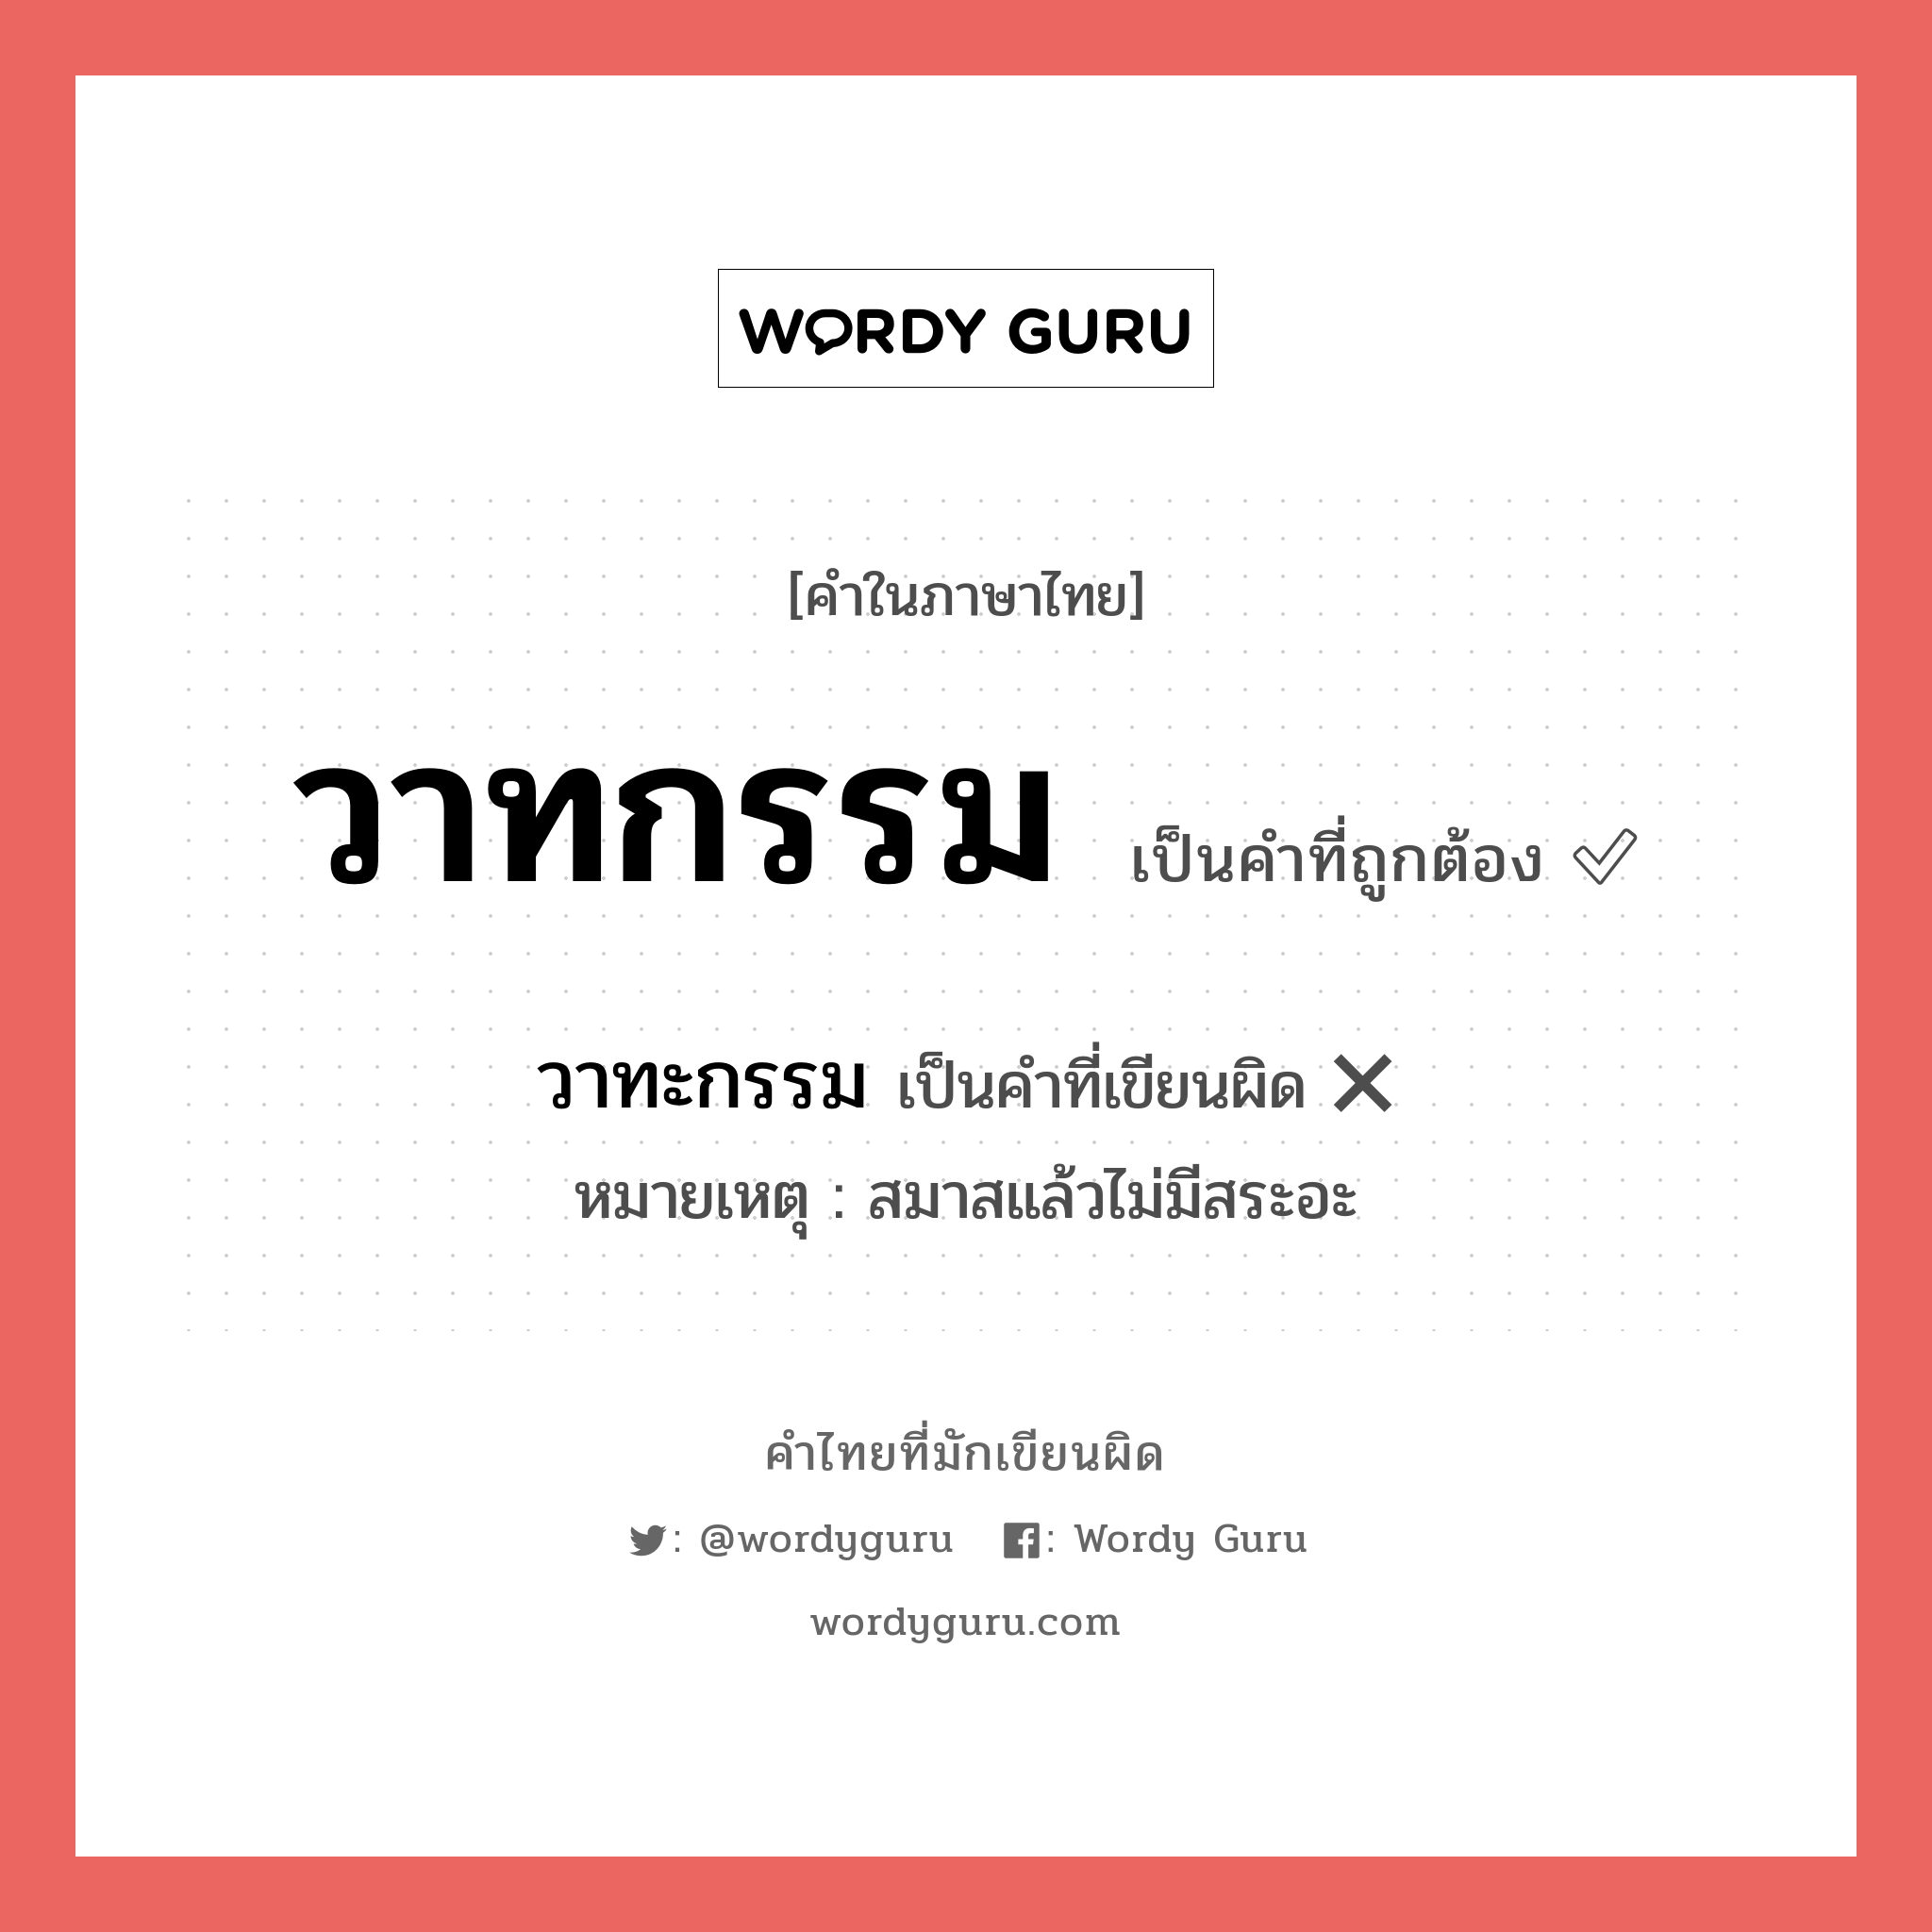 วาทกรรม หรือ วาทะกรรม คำไหนเขียนถูก?, คำในภาษาไทยที่มักเขียนผิด วาทกรรม คำที่ผิด ❌ วาทะกรรม หมายเหตุ สมาสแล้วไม่มีสระอะ